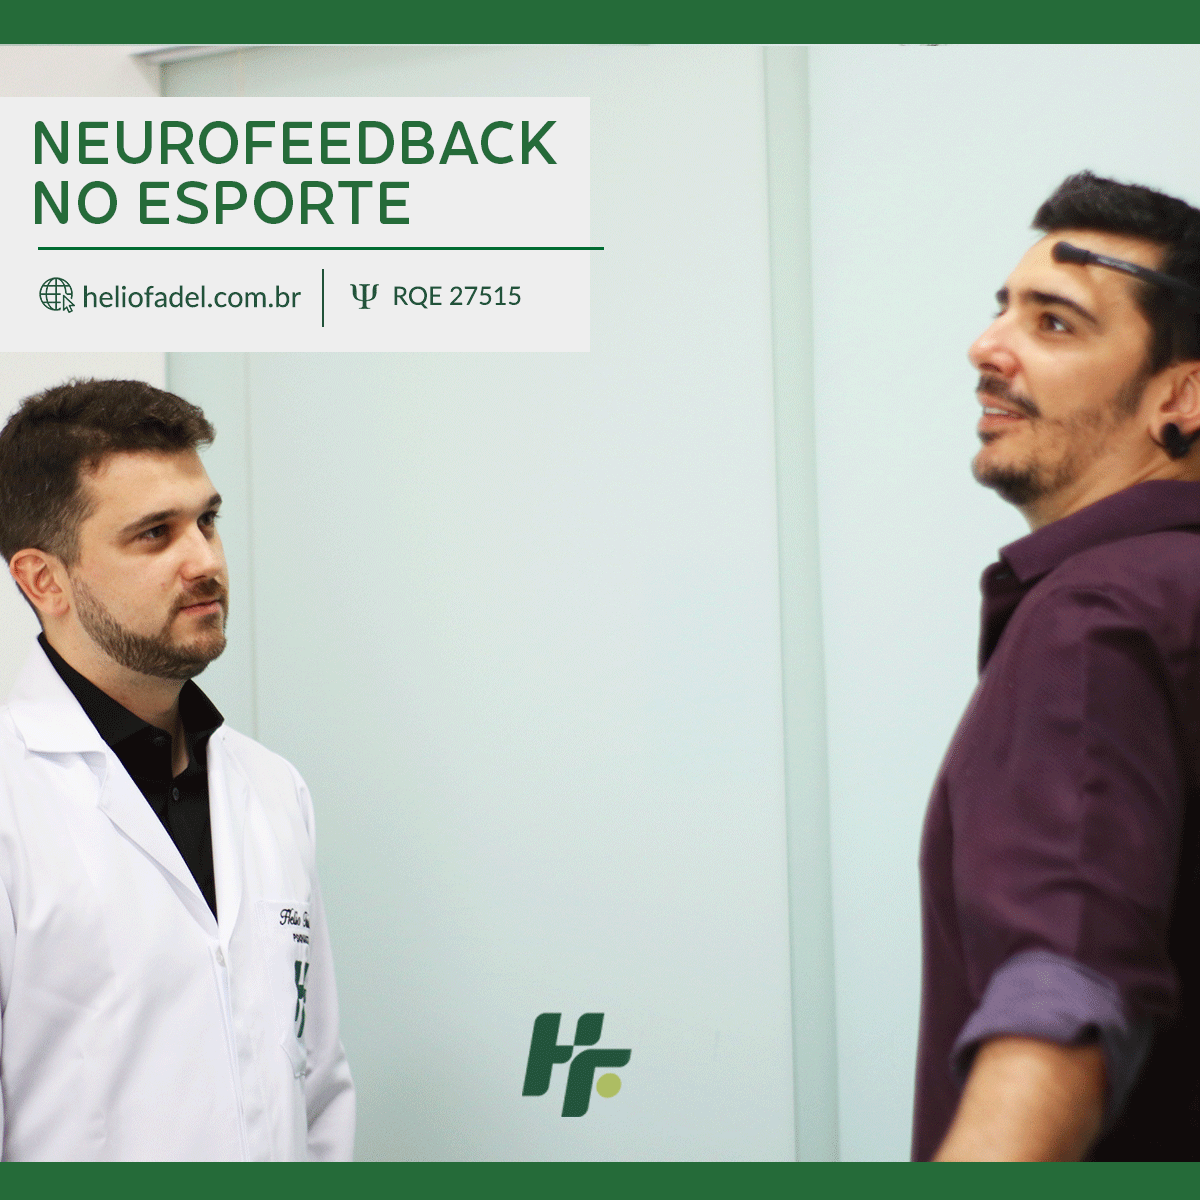 Neurofeedback no esporte - Neurofeedback no Esporte e seus benefícios